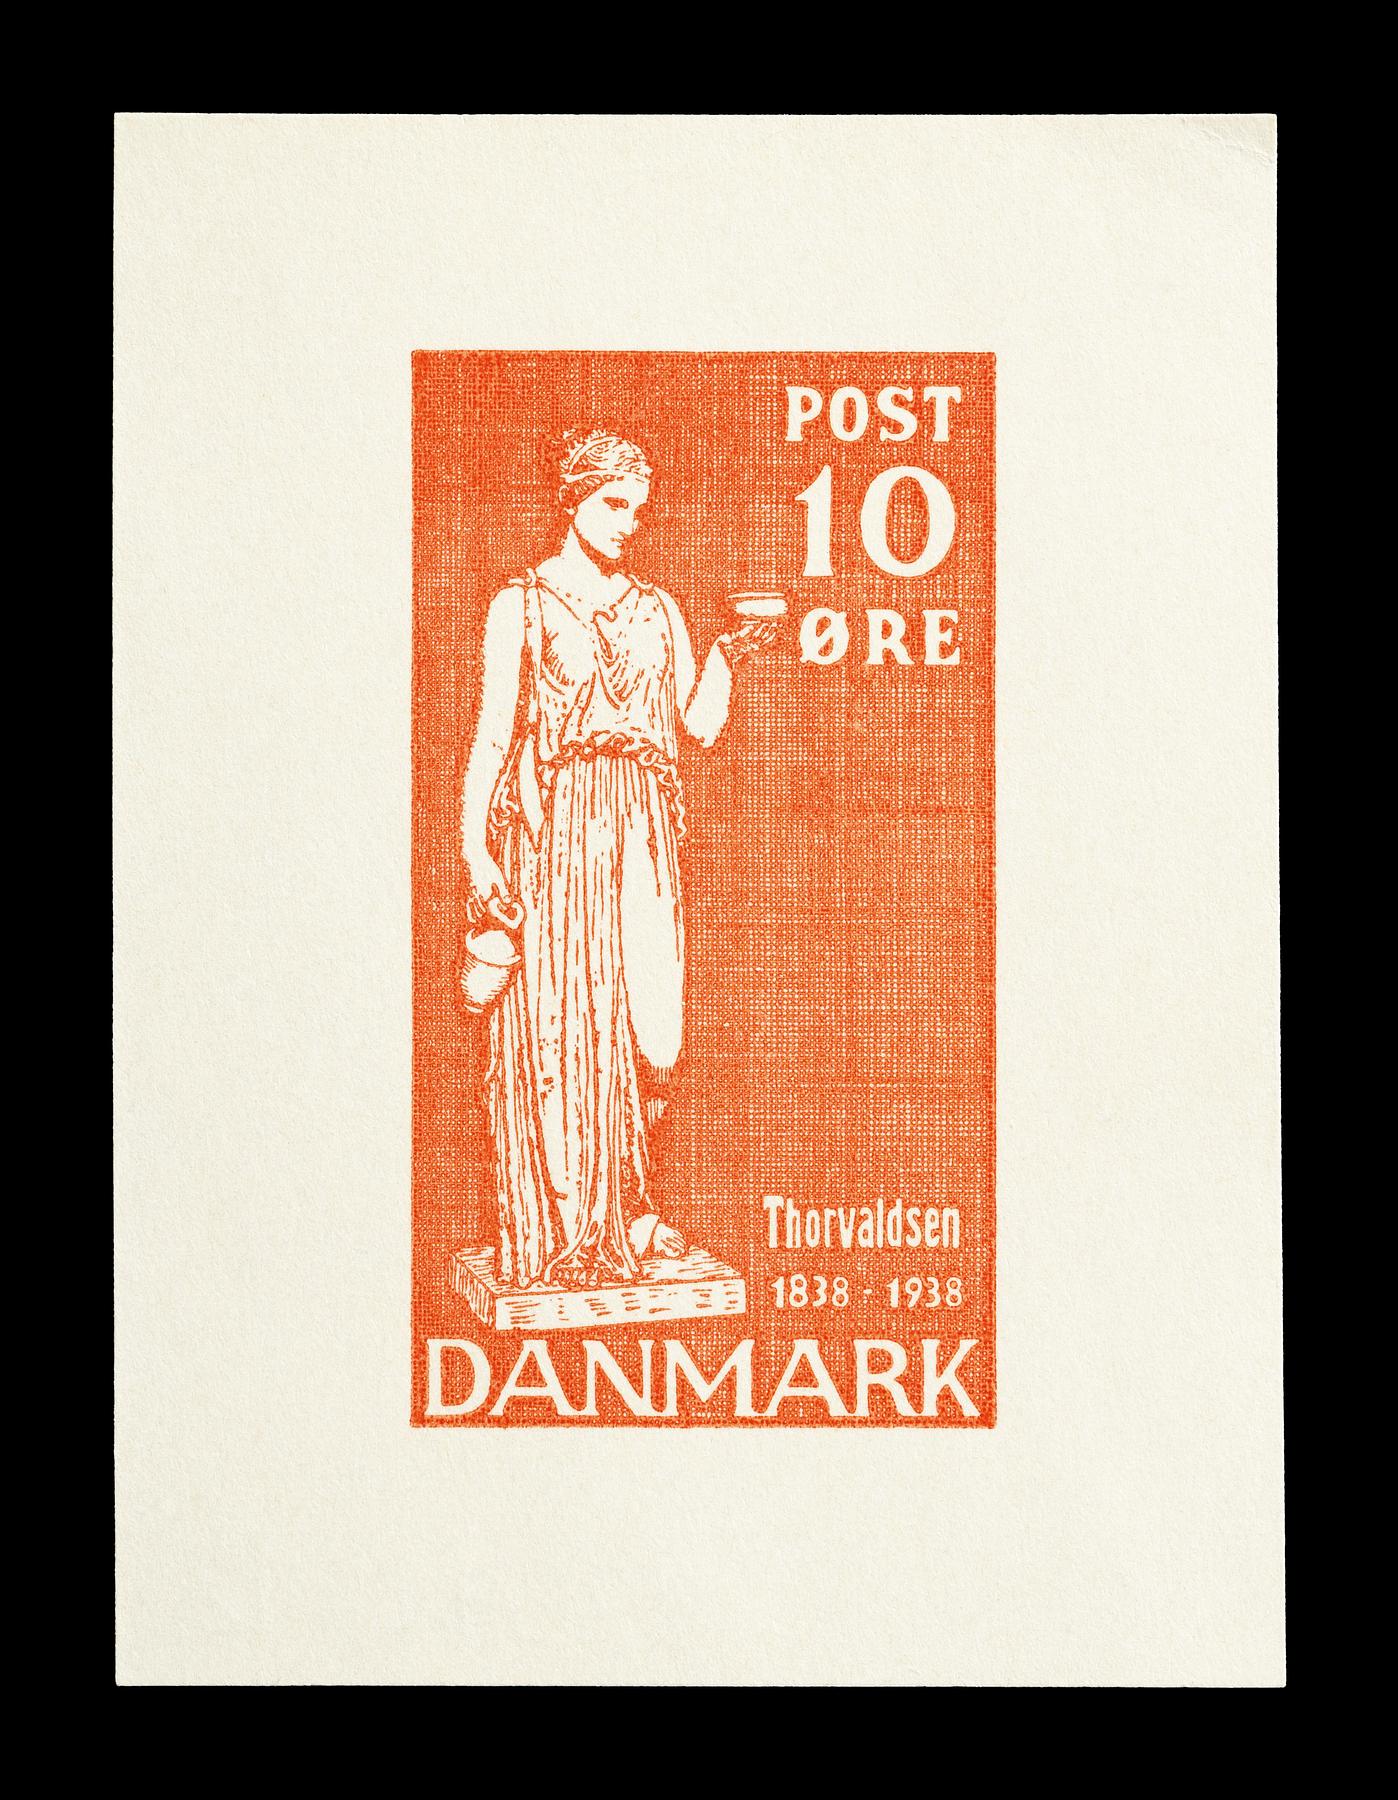 Prøvetryk af udkast til et dansk frimærke med Thorvaldsens Hebe, E2341,12